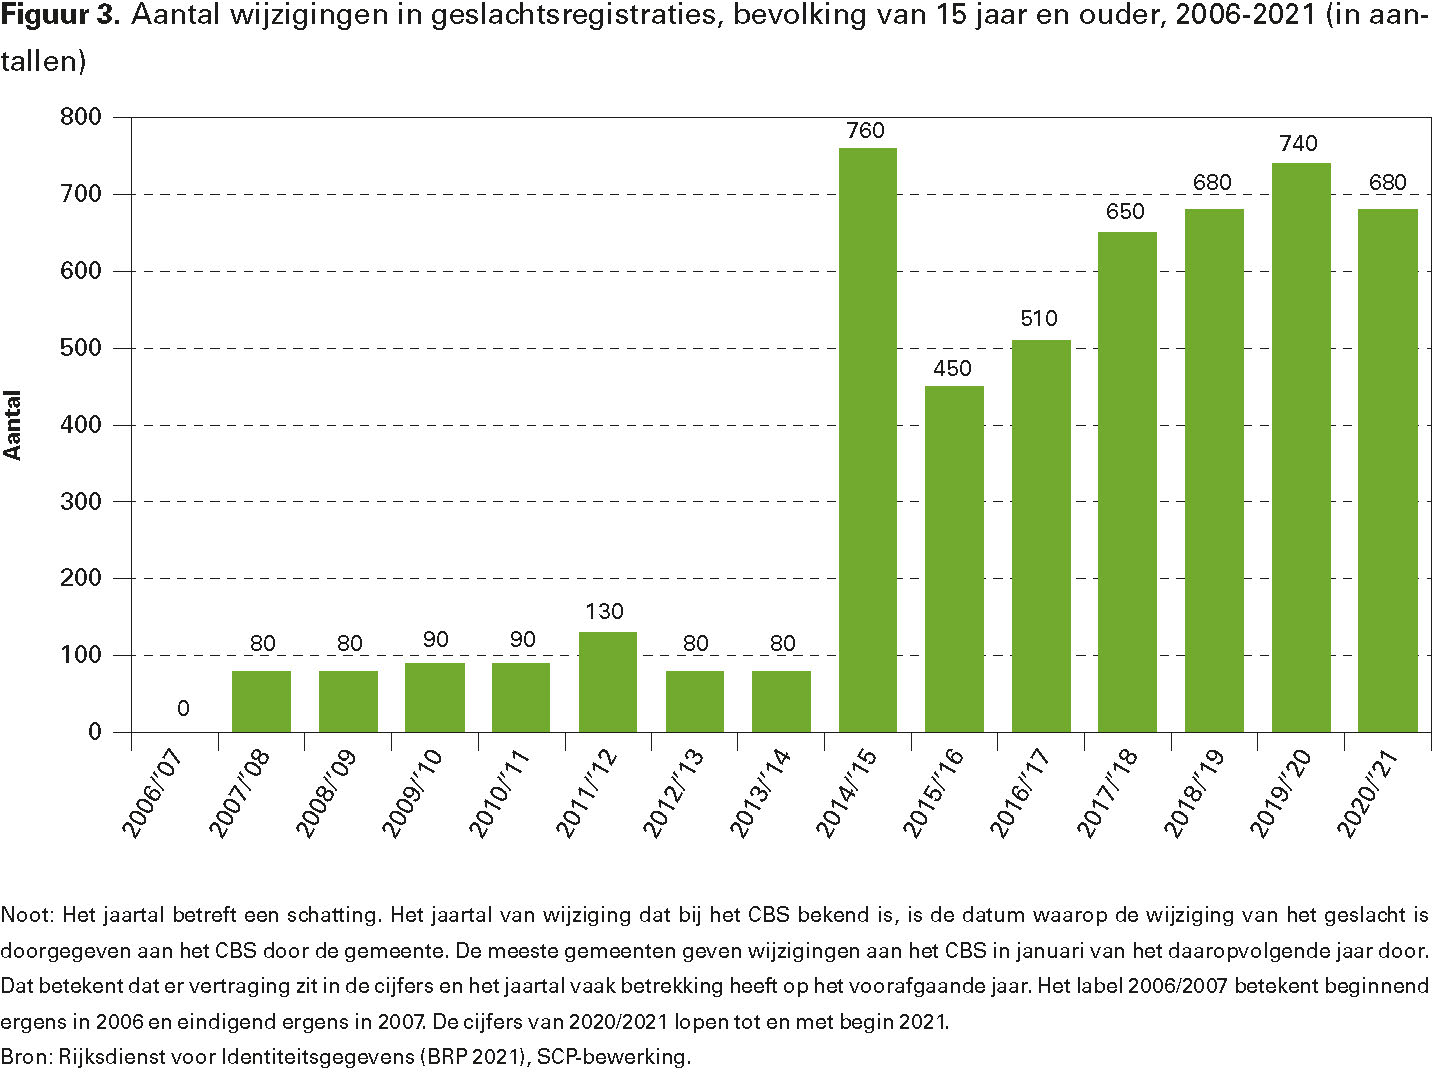 Figuur 3. Aantal wijzigingen in geslachtsregistraties, bevolking van 15 jaar en ouder, 2006-2021 (in aantallen)